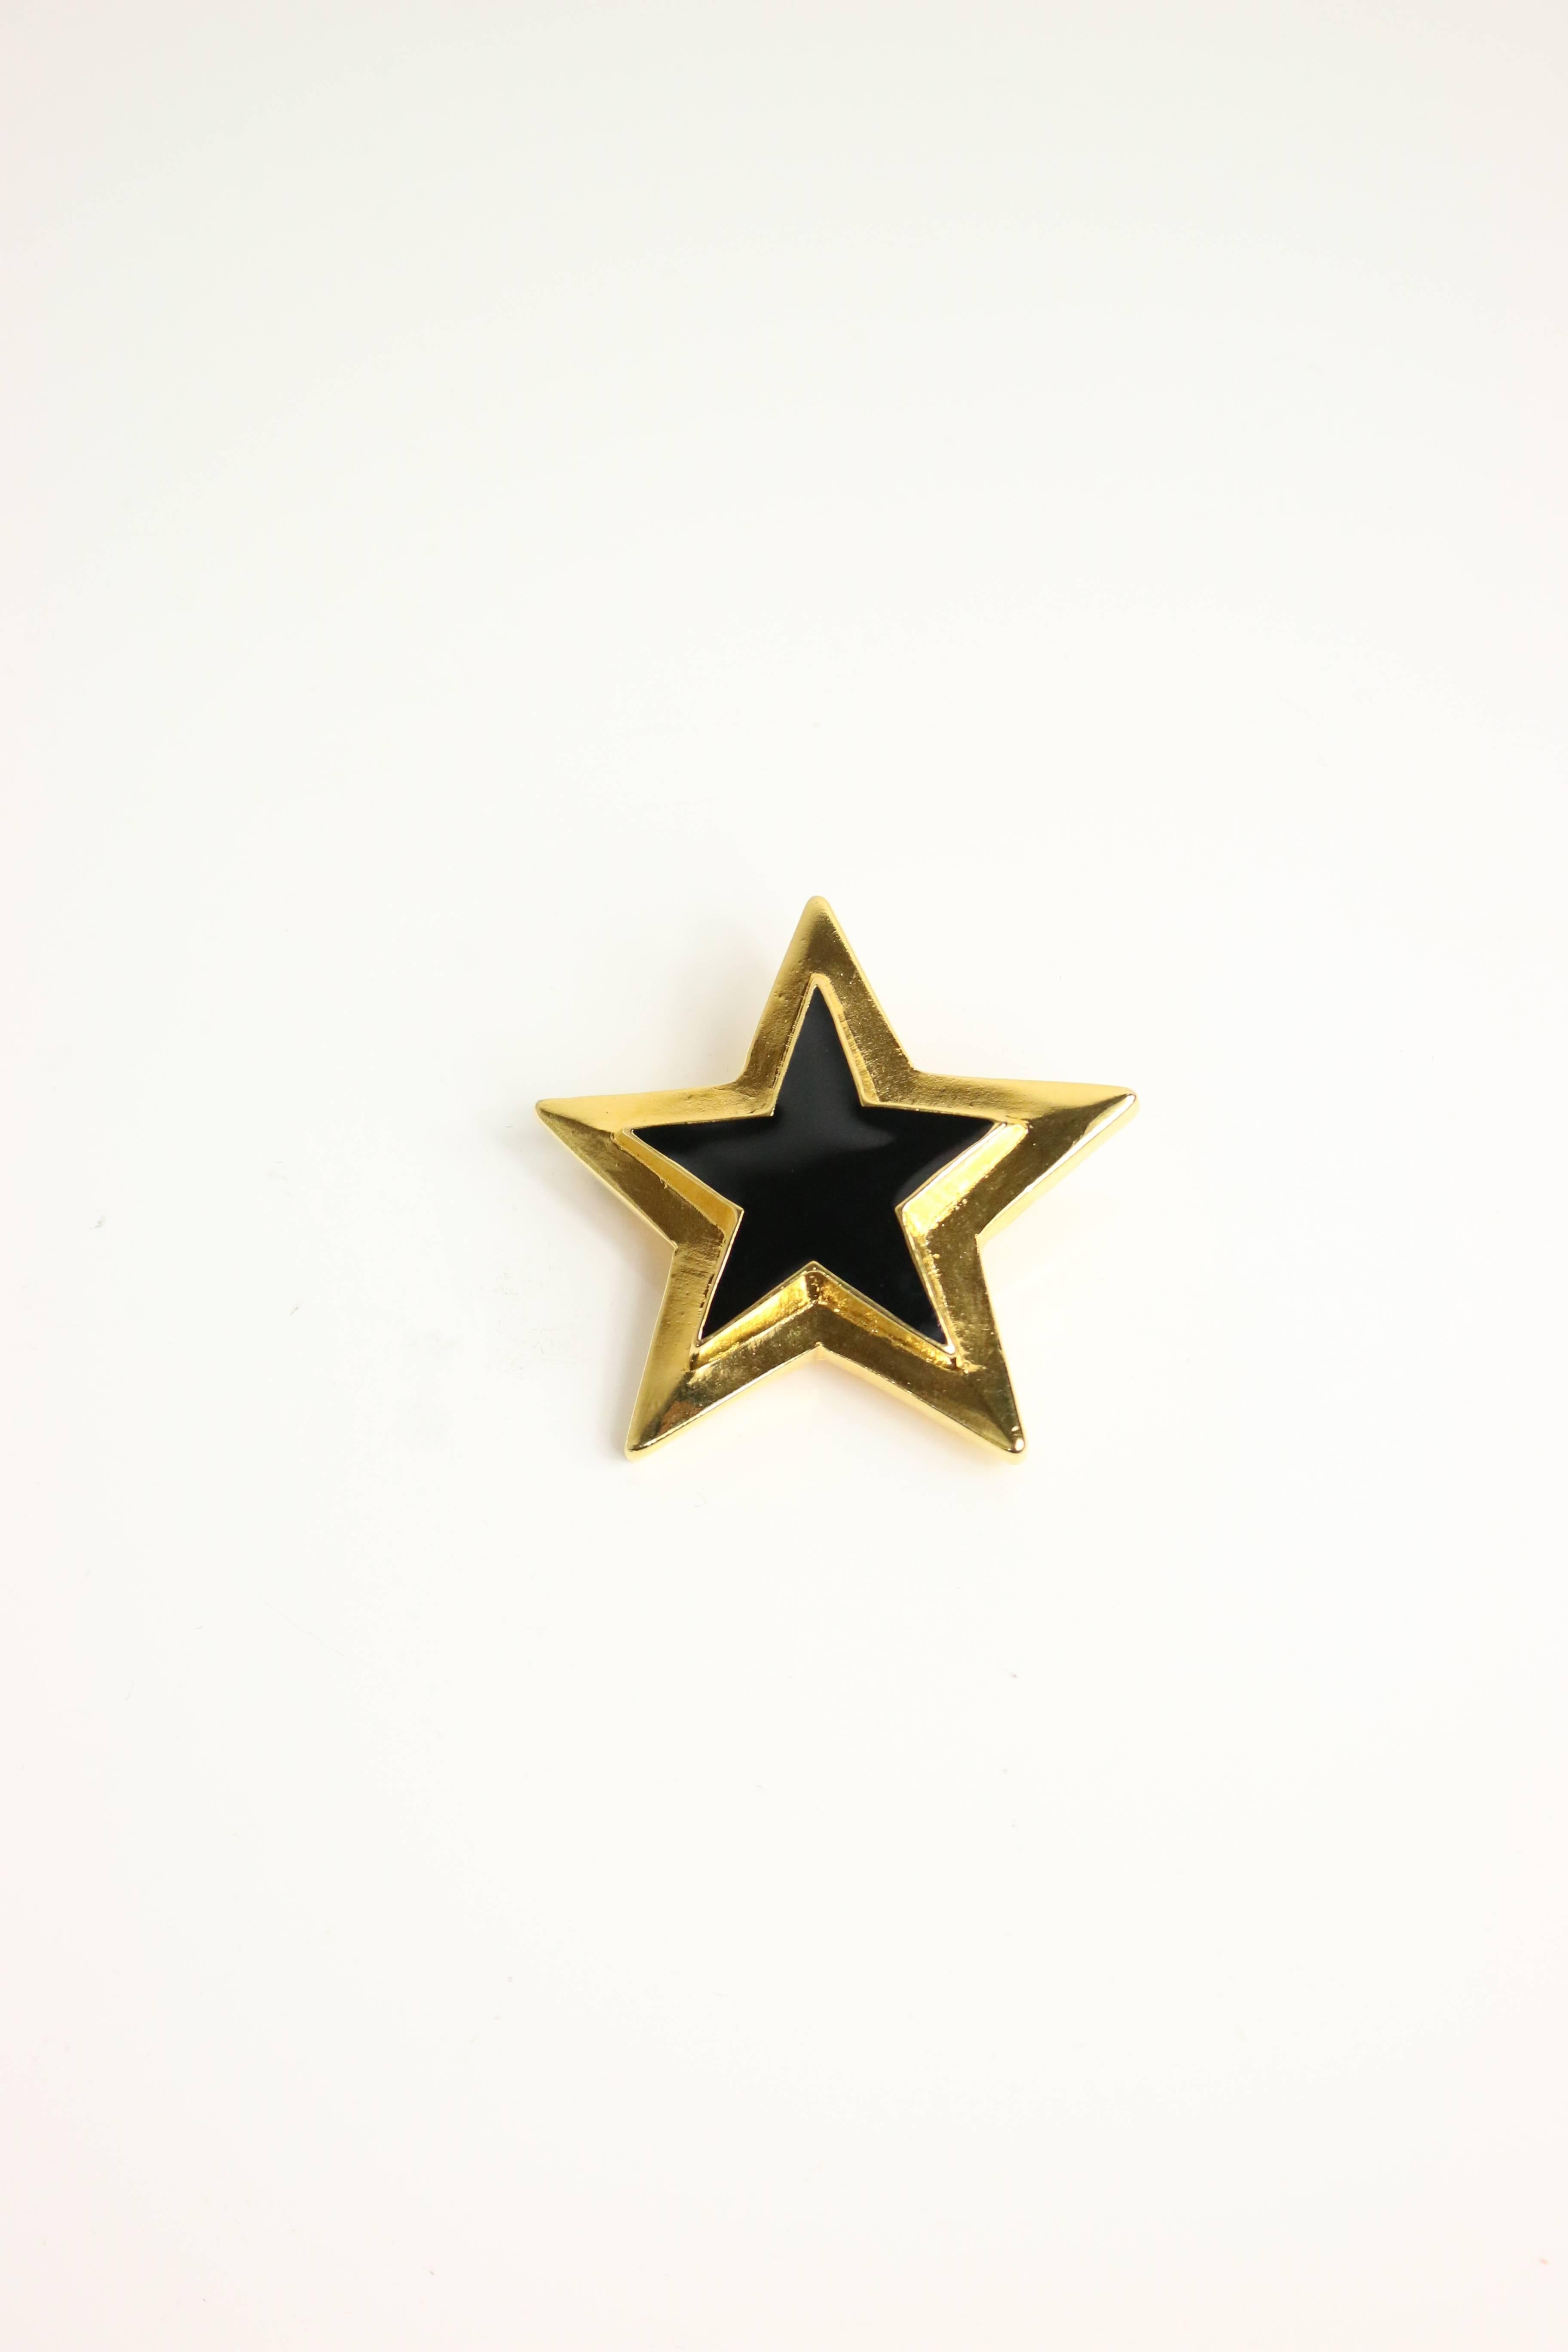 - Escada gold/schwarze Stern-Brosche aus den 80er Jahren. 

- Länge: 2.5in 

